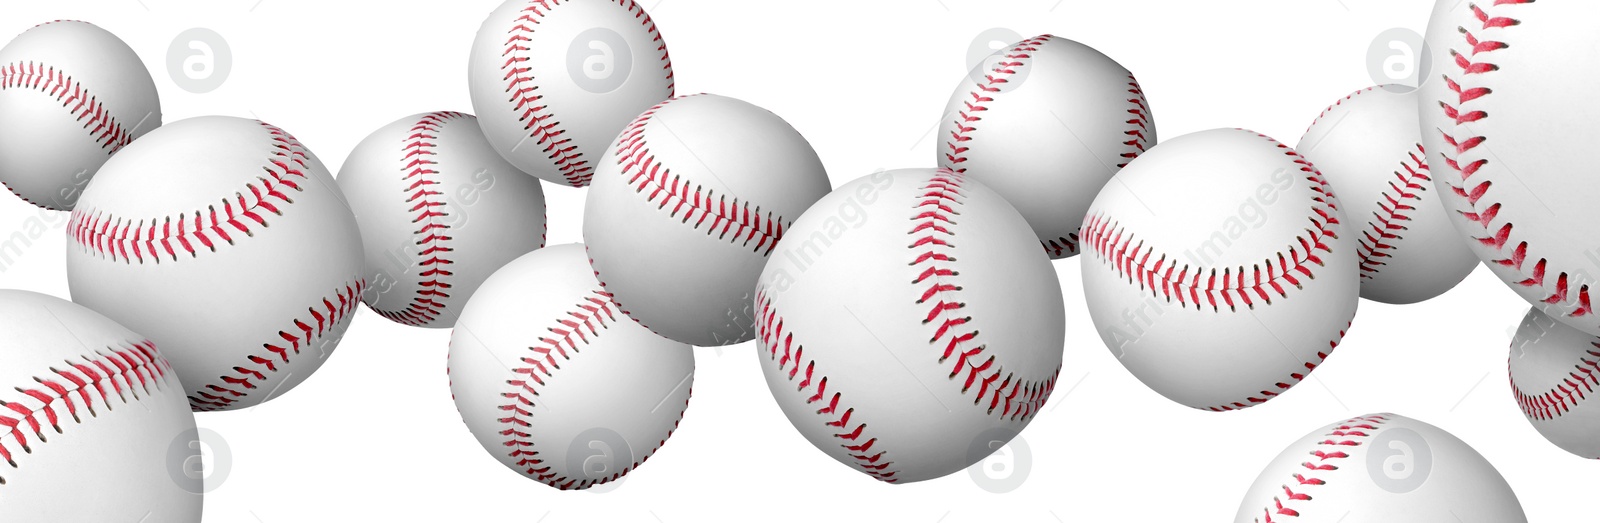 Image of Many baseball balls flying on white background